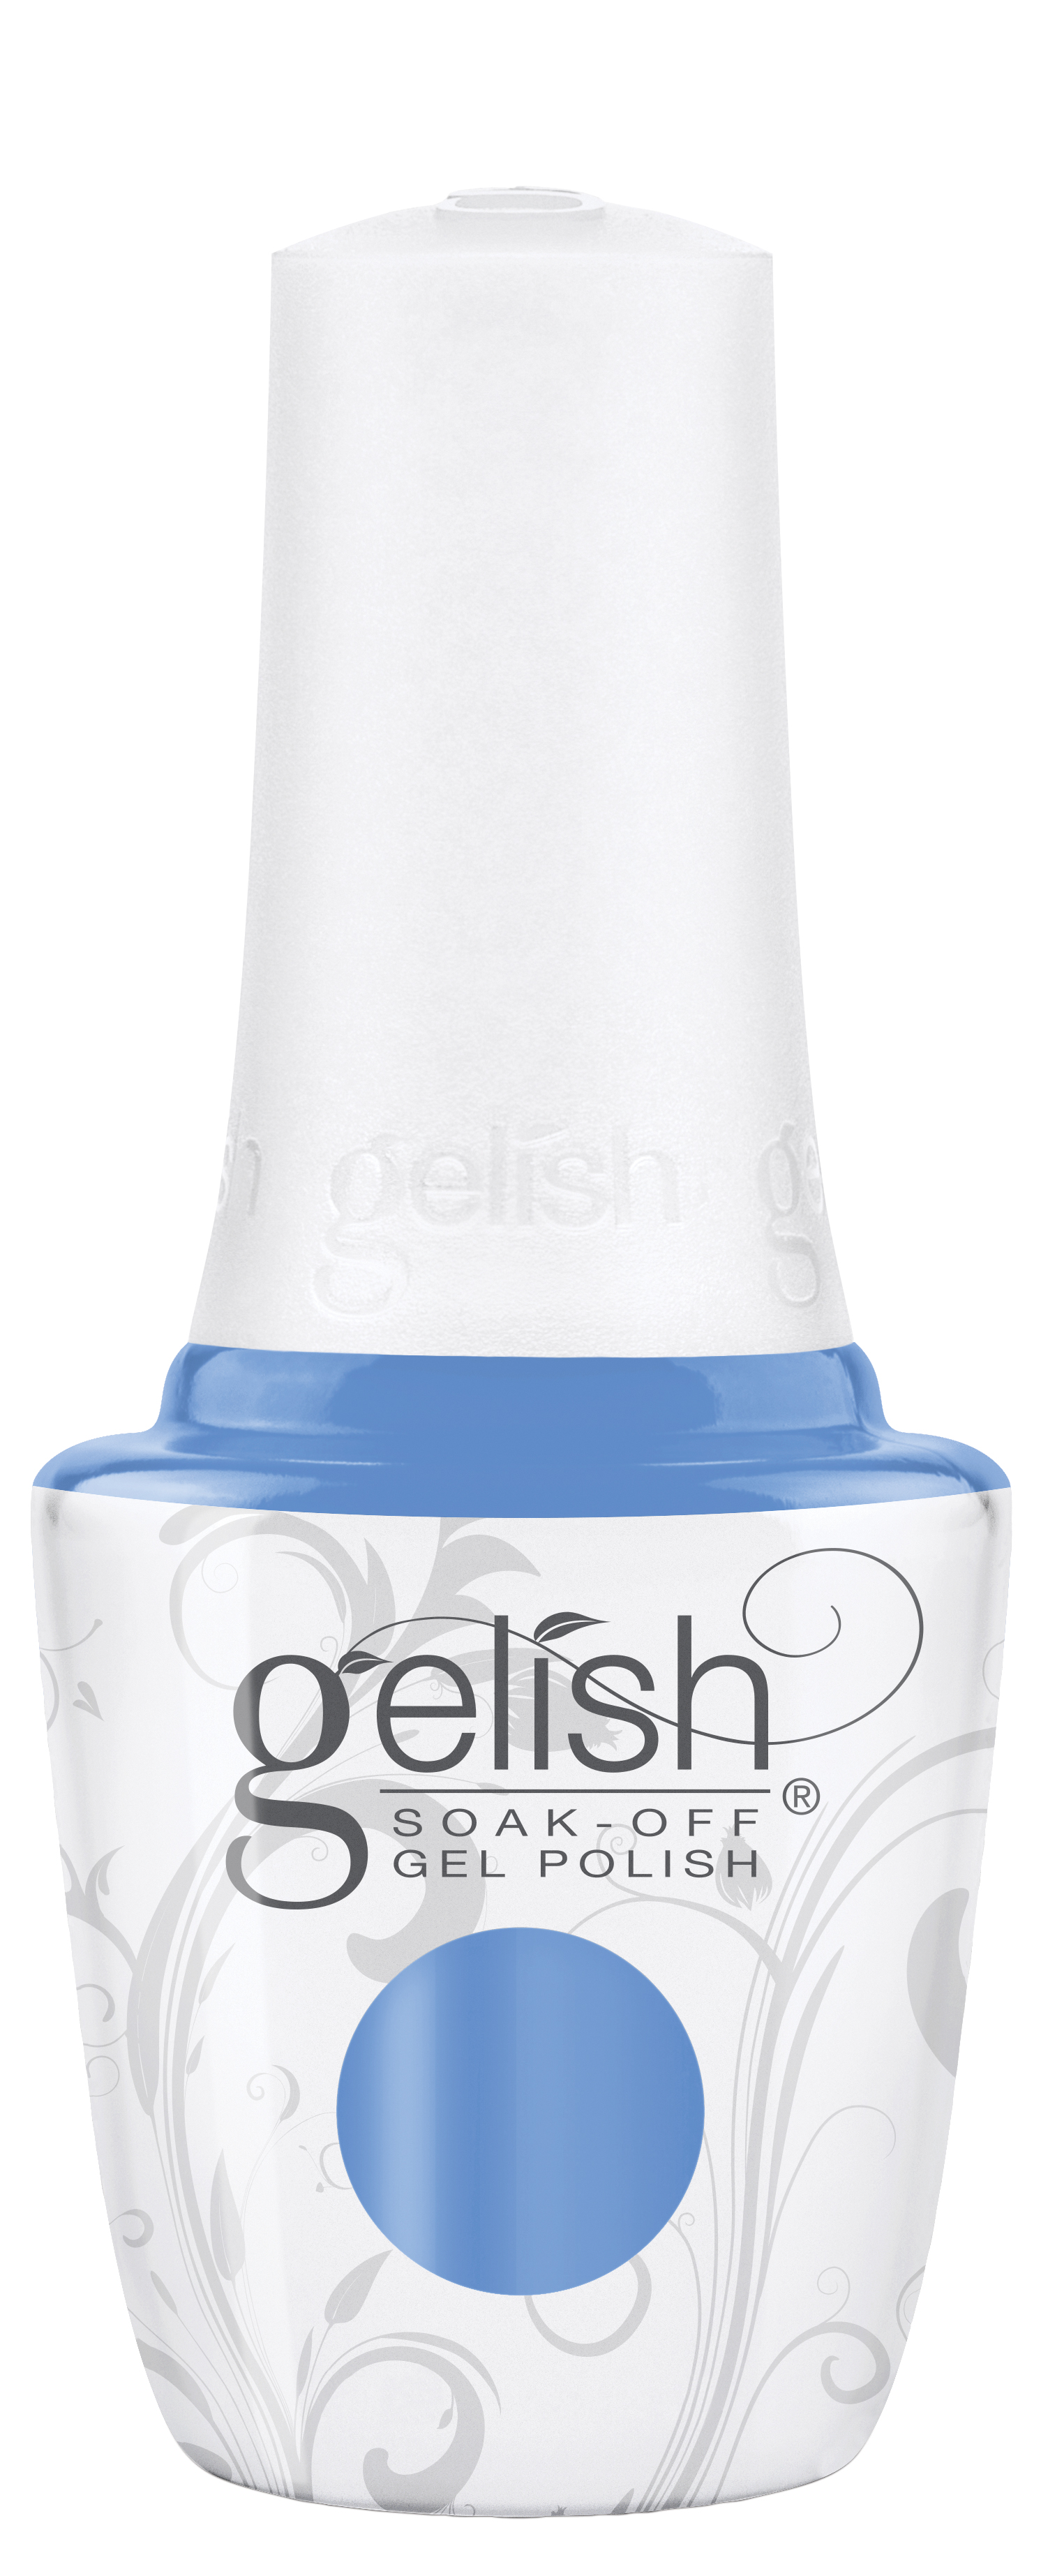 Gelish Soak-Off Gel Polish Soaring Above It All, 0.5 fl oz. 